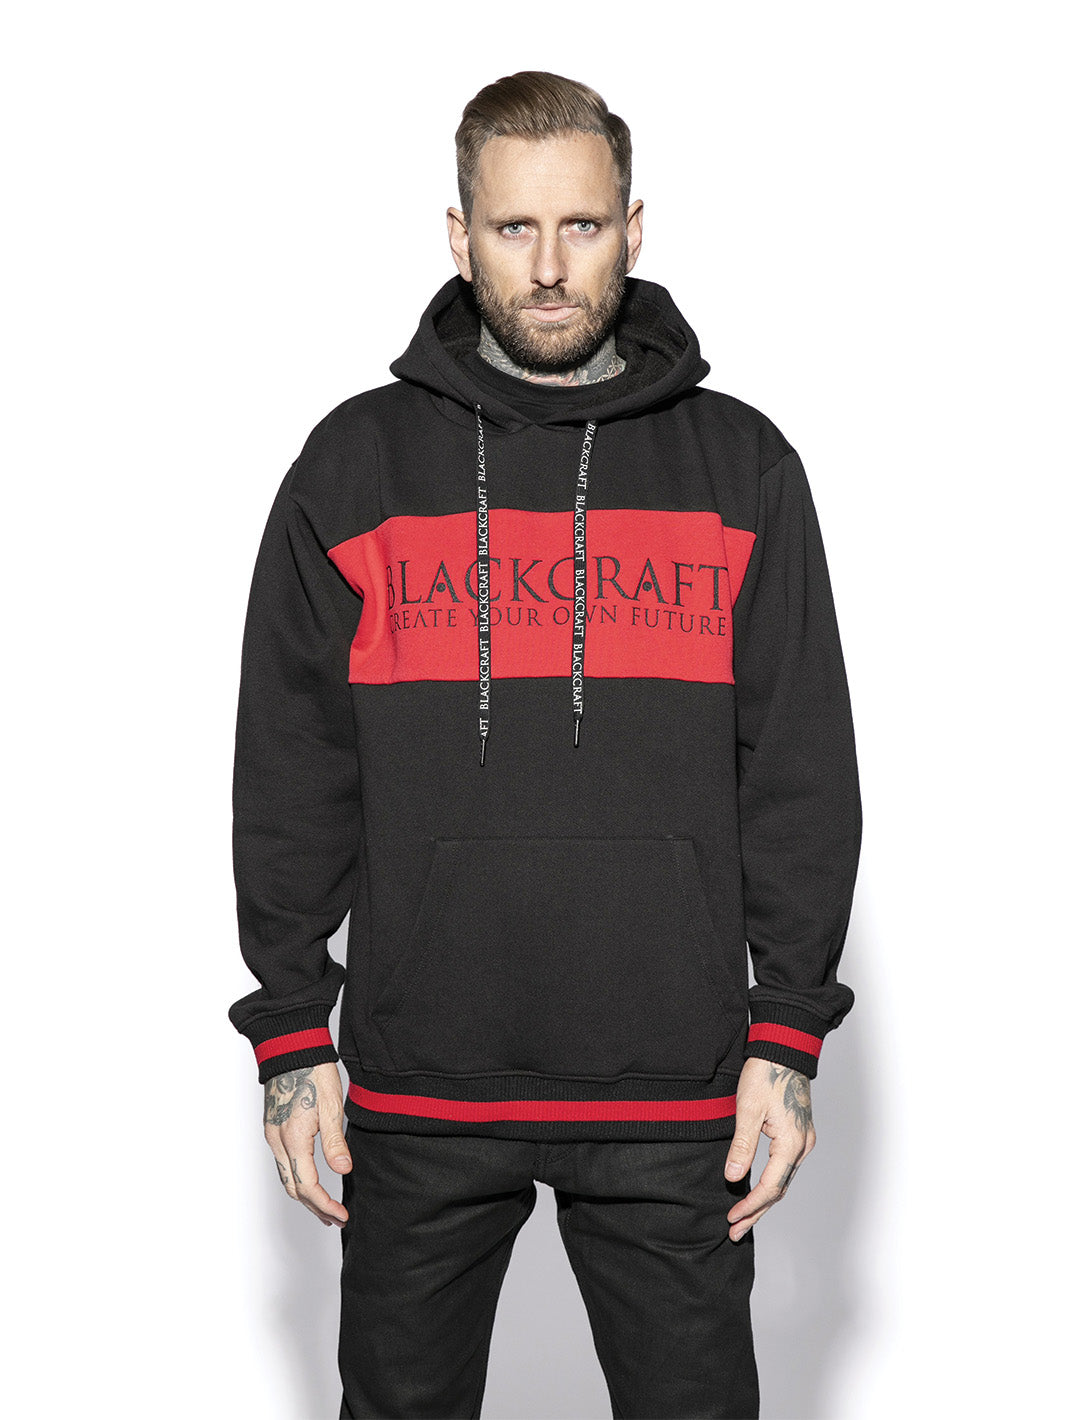 black and red Blackcraft hoodie